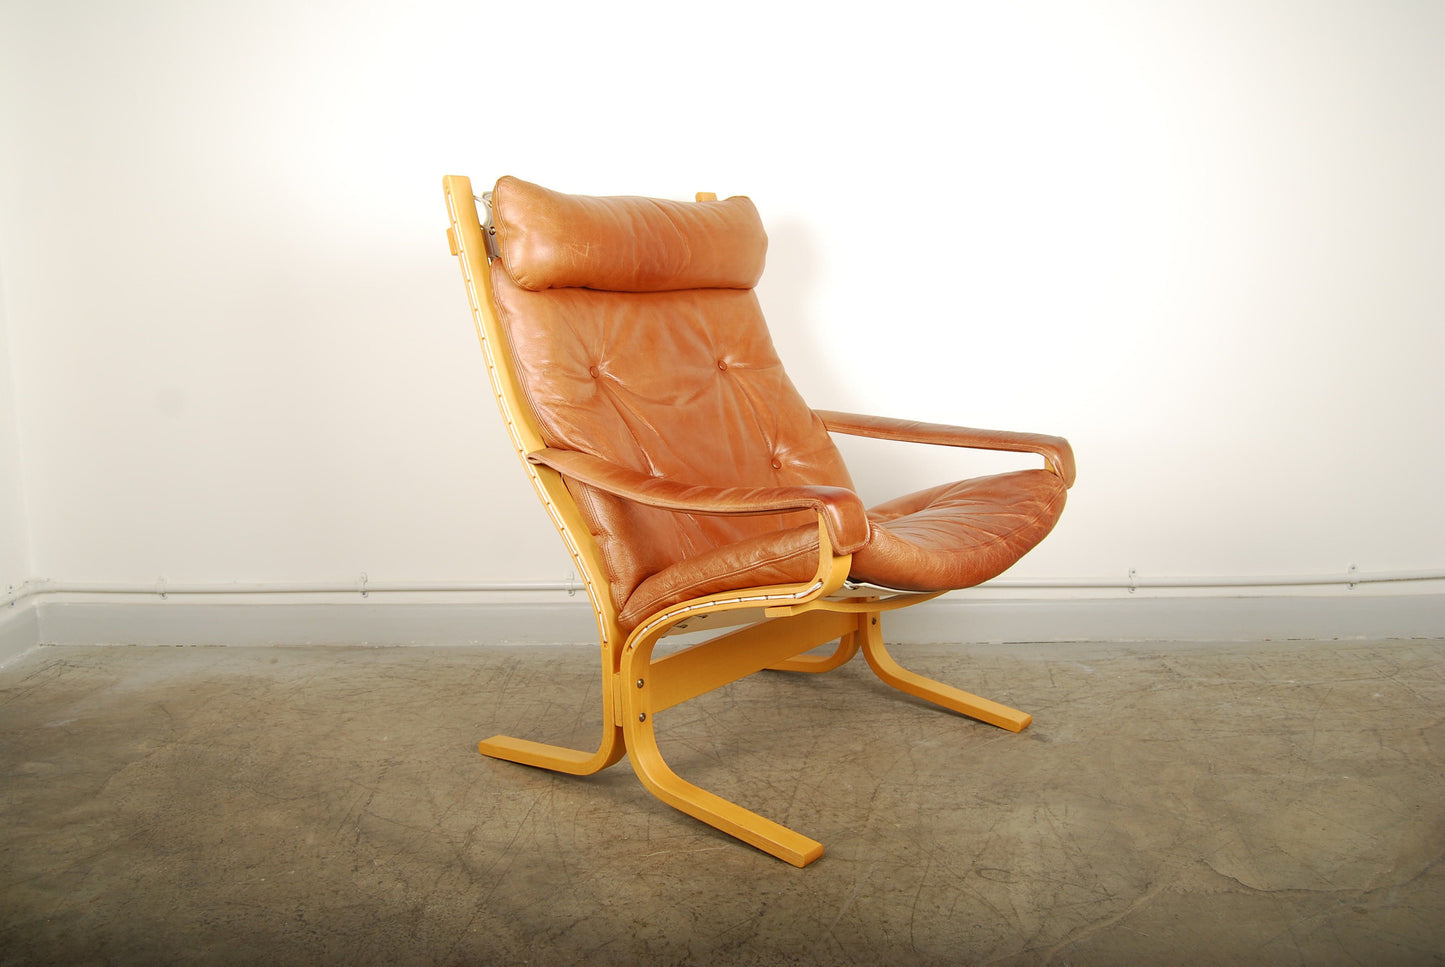 Siesta chair by Ingmar Relling